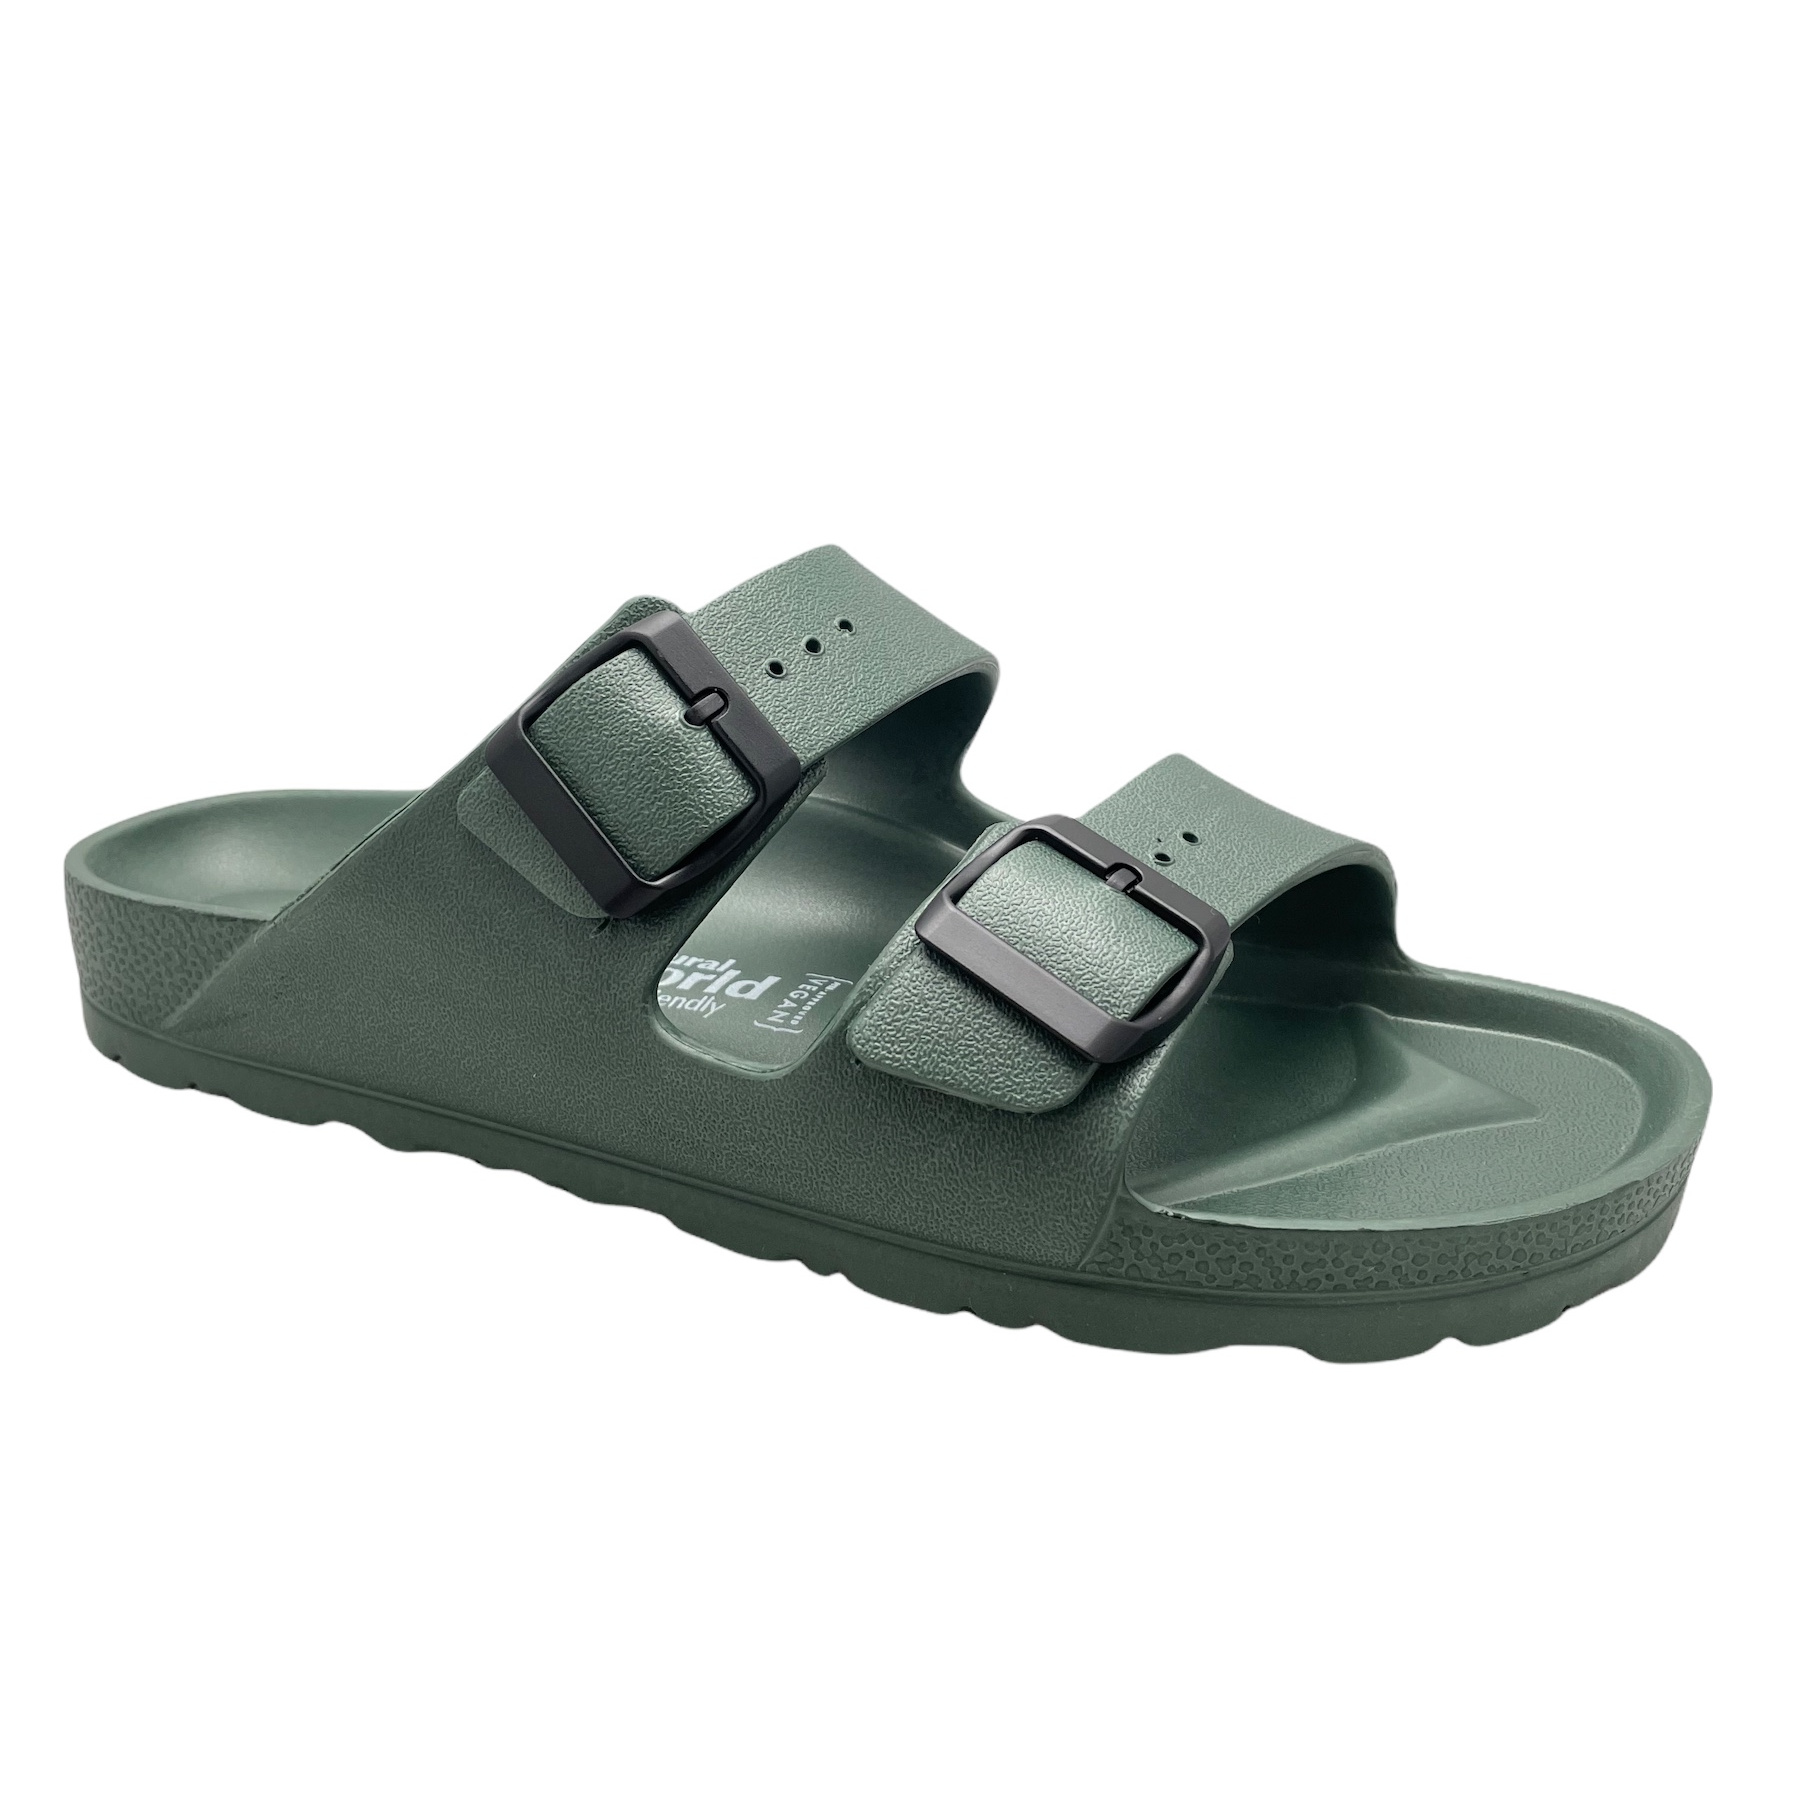 Slippers: NATURAL WORLD ECO 7051 Khaki green Eva sabot sandal slipper